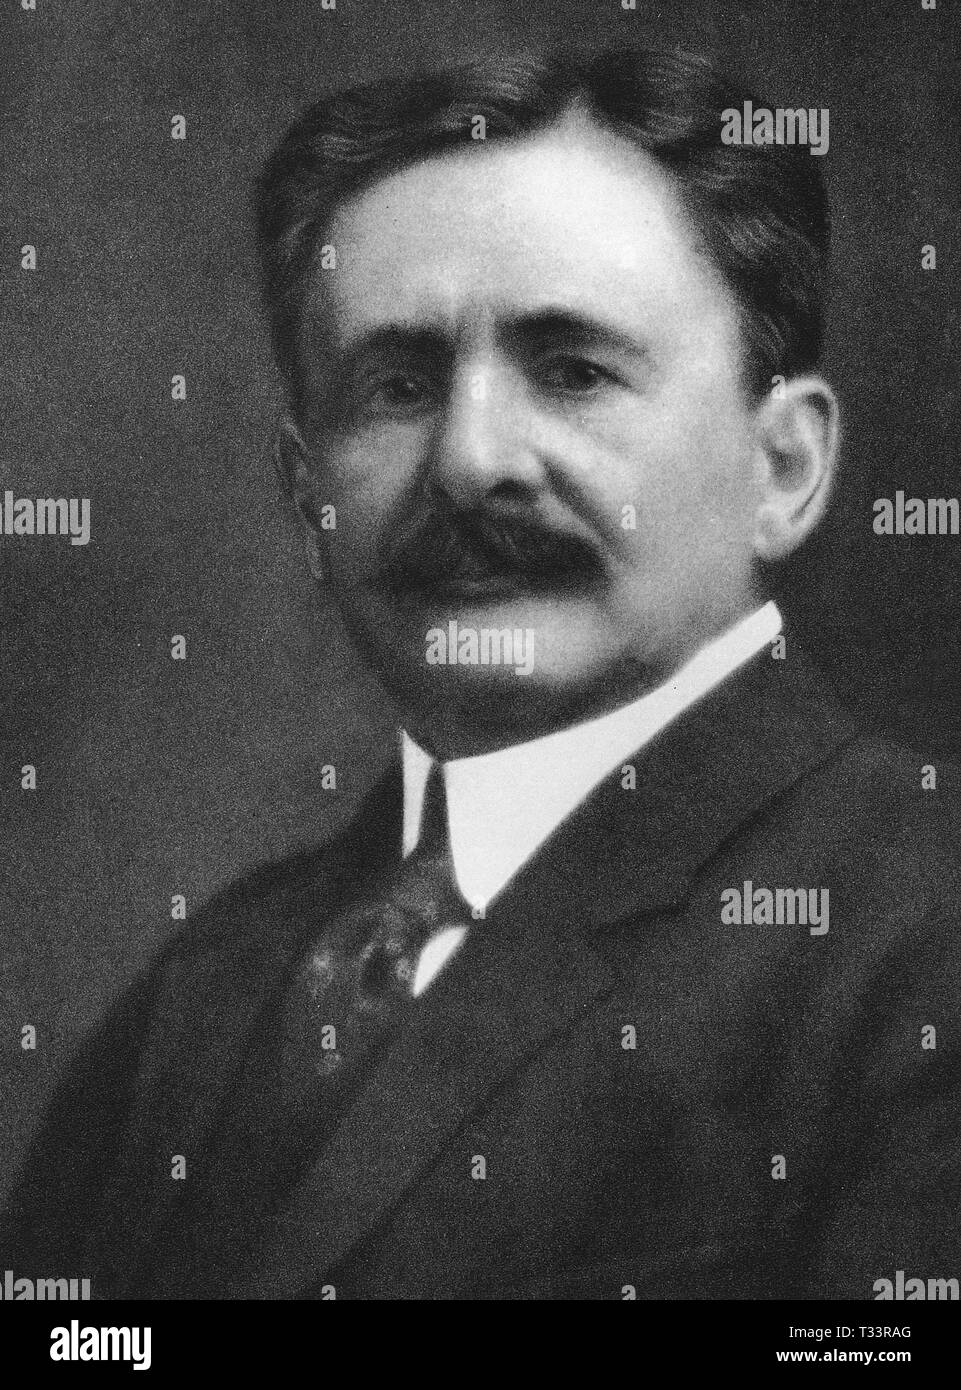 ALBERT MICHELSON 1852/1931 PREMIO NOBEL DE FISICA EN 1907. DISEÑO UN APARATO PAR MEDIR LA VELOCIDAD DE LA TIERRA. Stock Photo